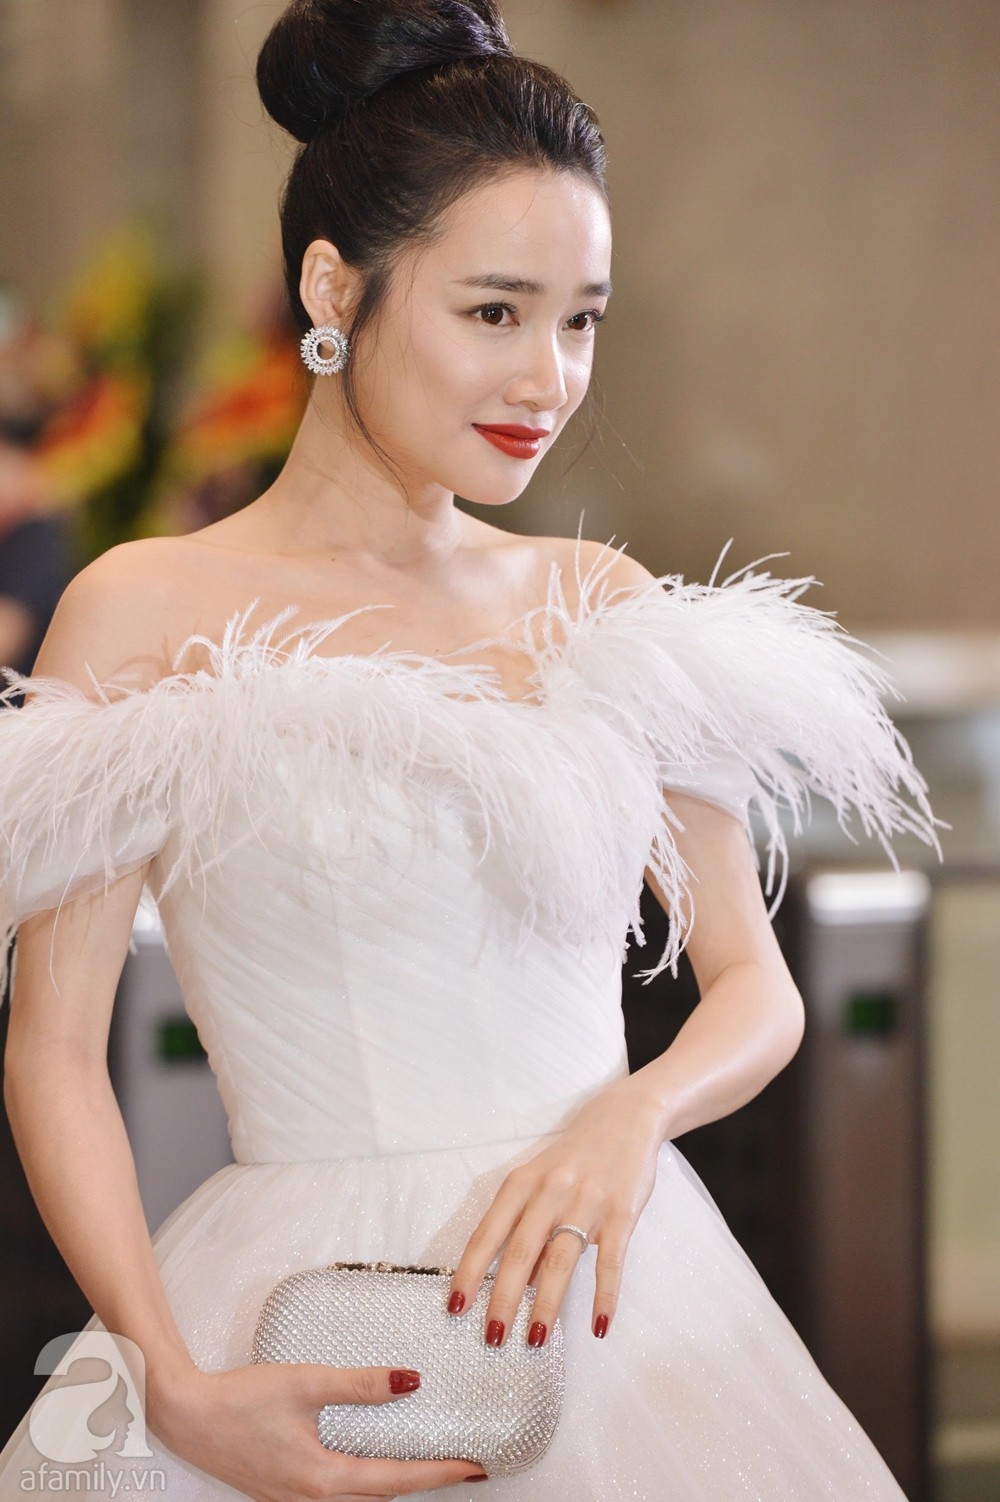 Váy cưới xòe công chúa sang trọng RD-8806 - Durian Bridal